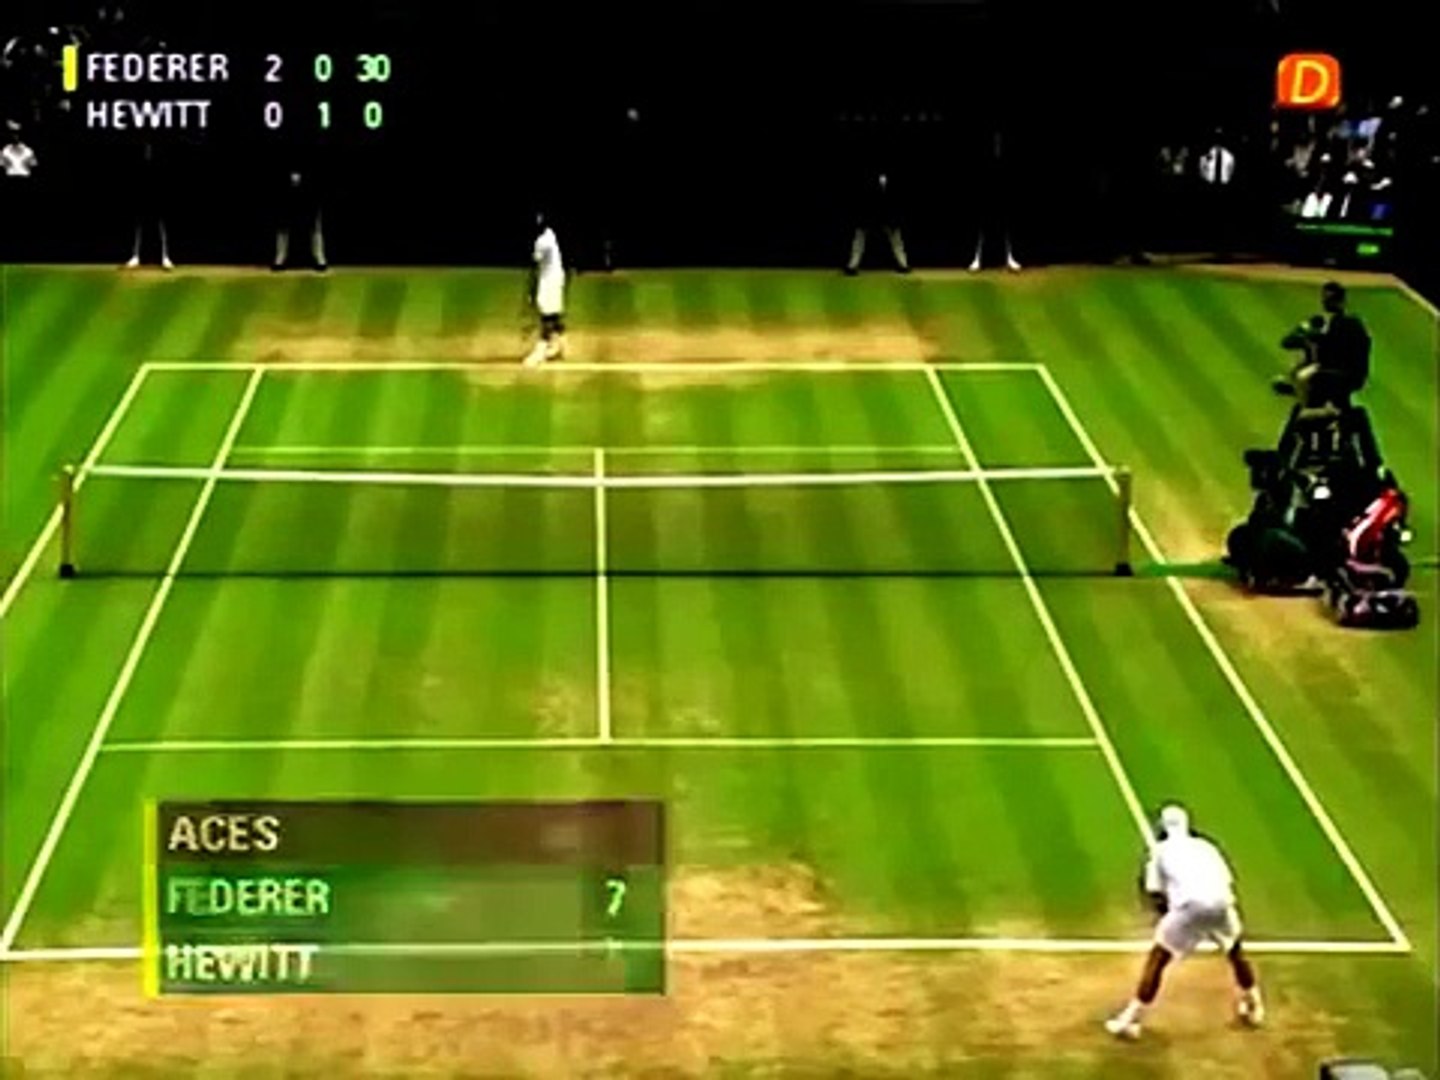 Federer Vs Hewitt- SF wimbledon 2005 Highlights - video Dailymotion